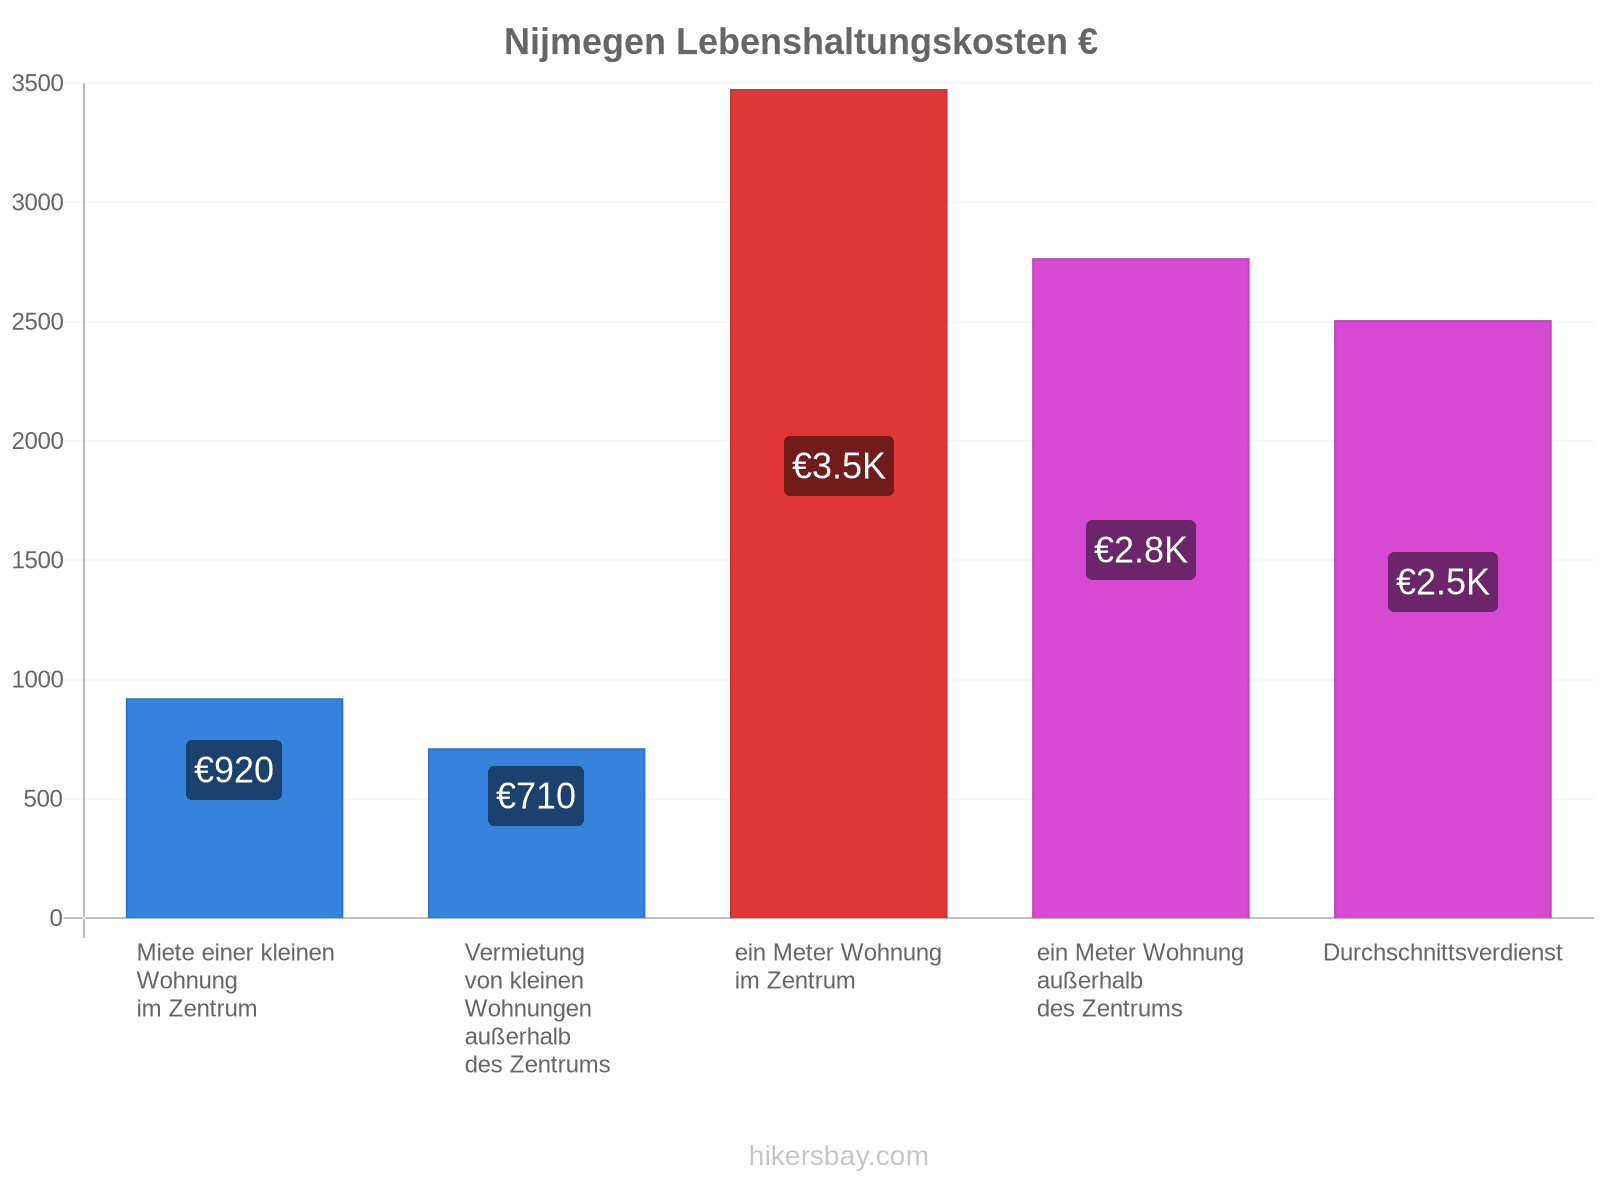 Nijmegen Lebenshaltungskosten hikersbay.com